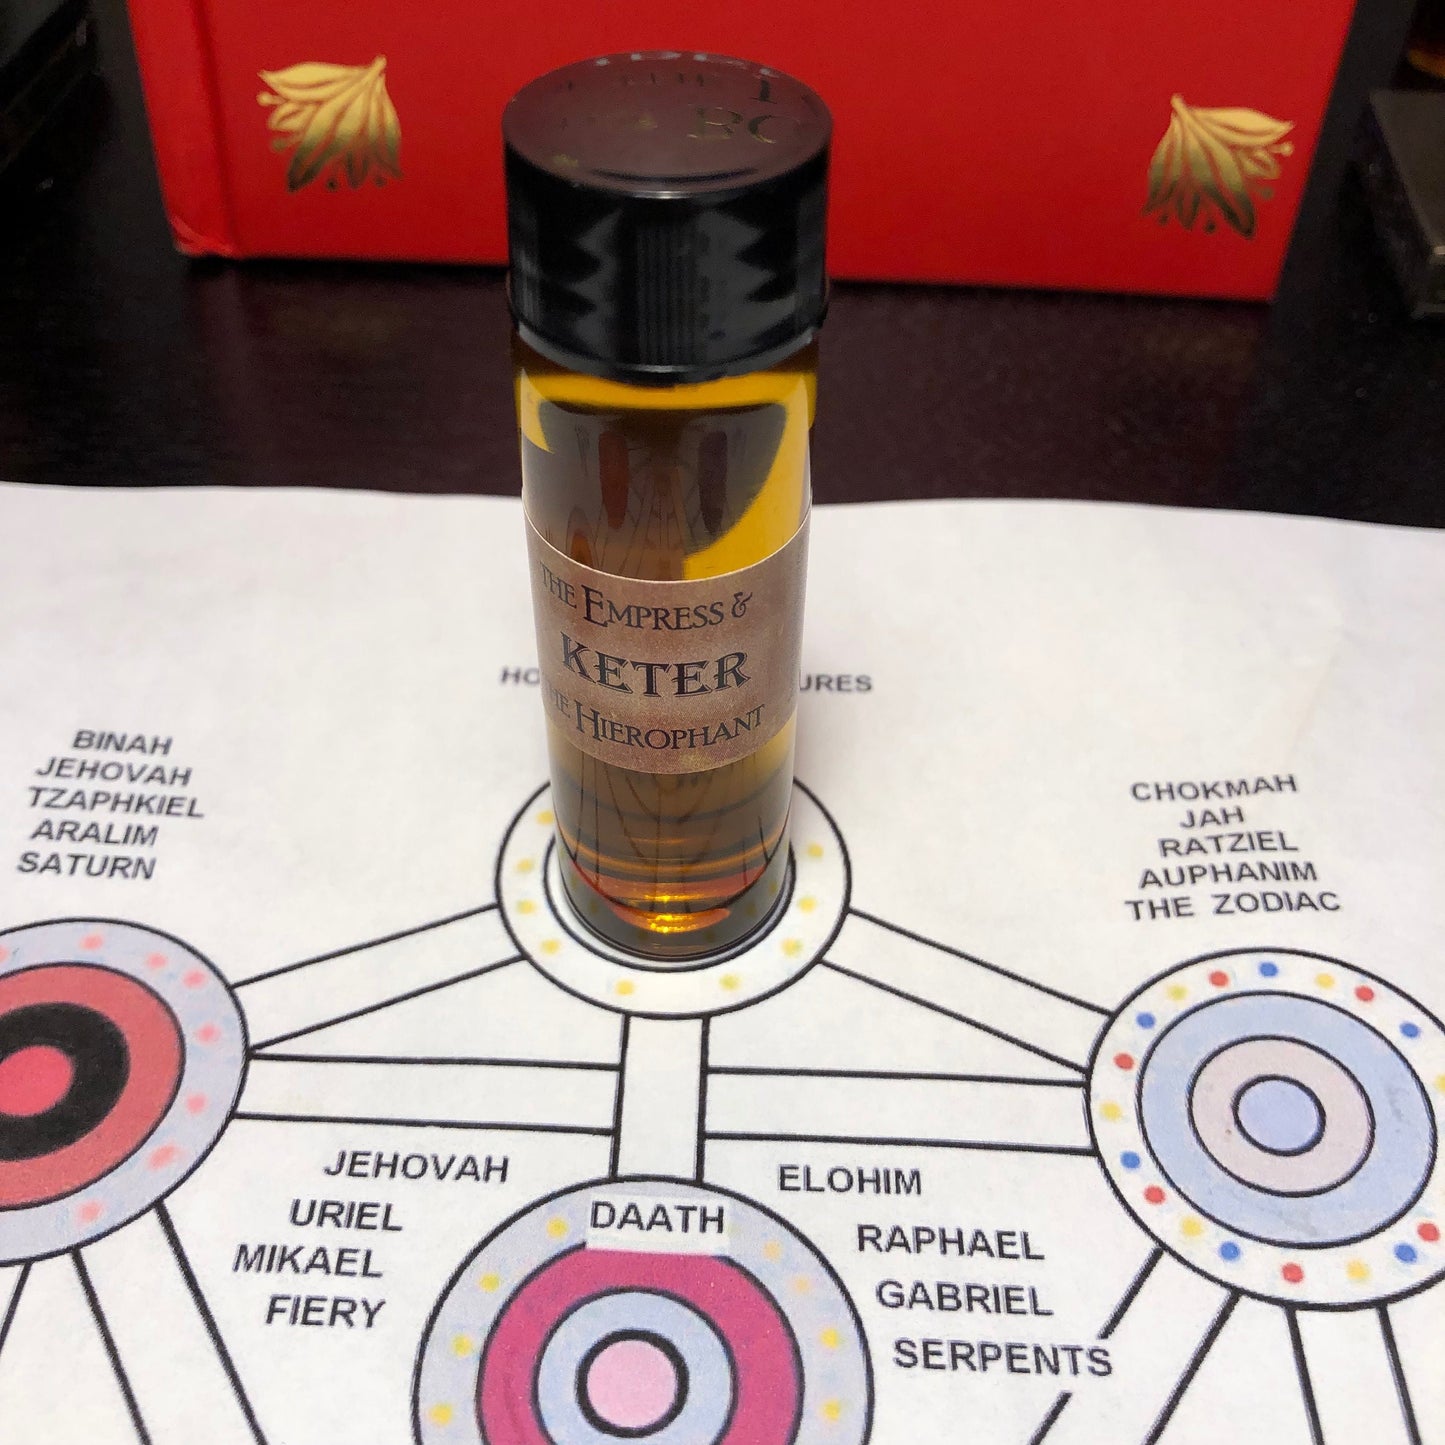 Kether Oil (Sephirotic Oil)